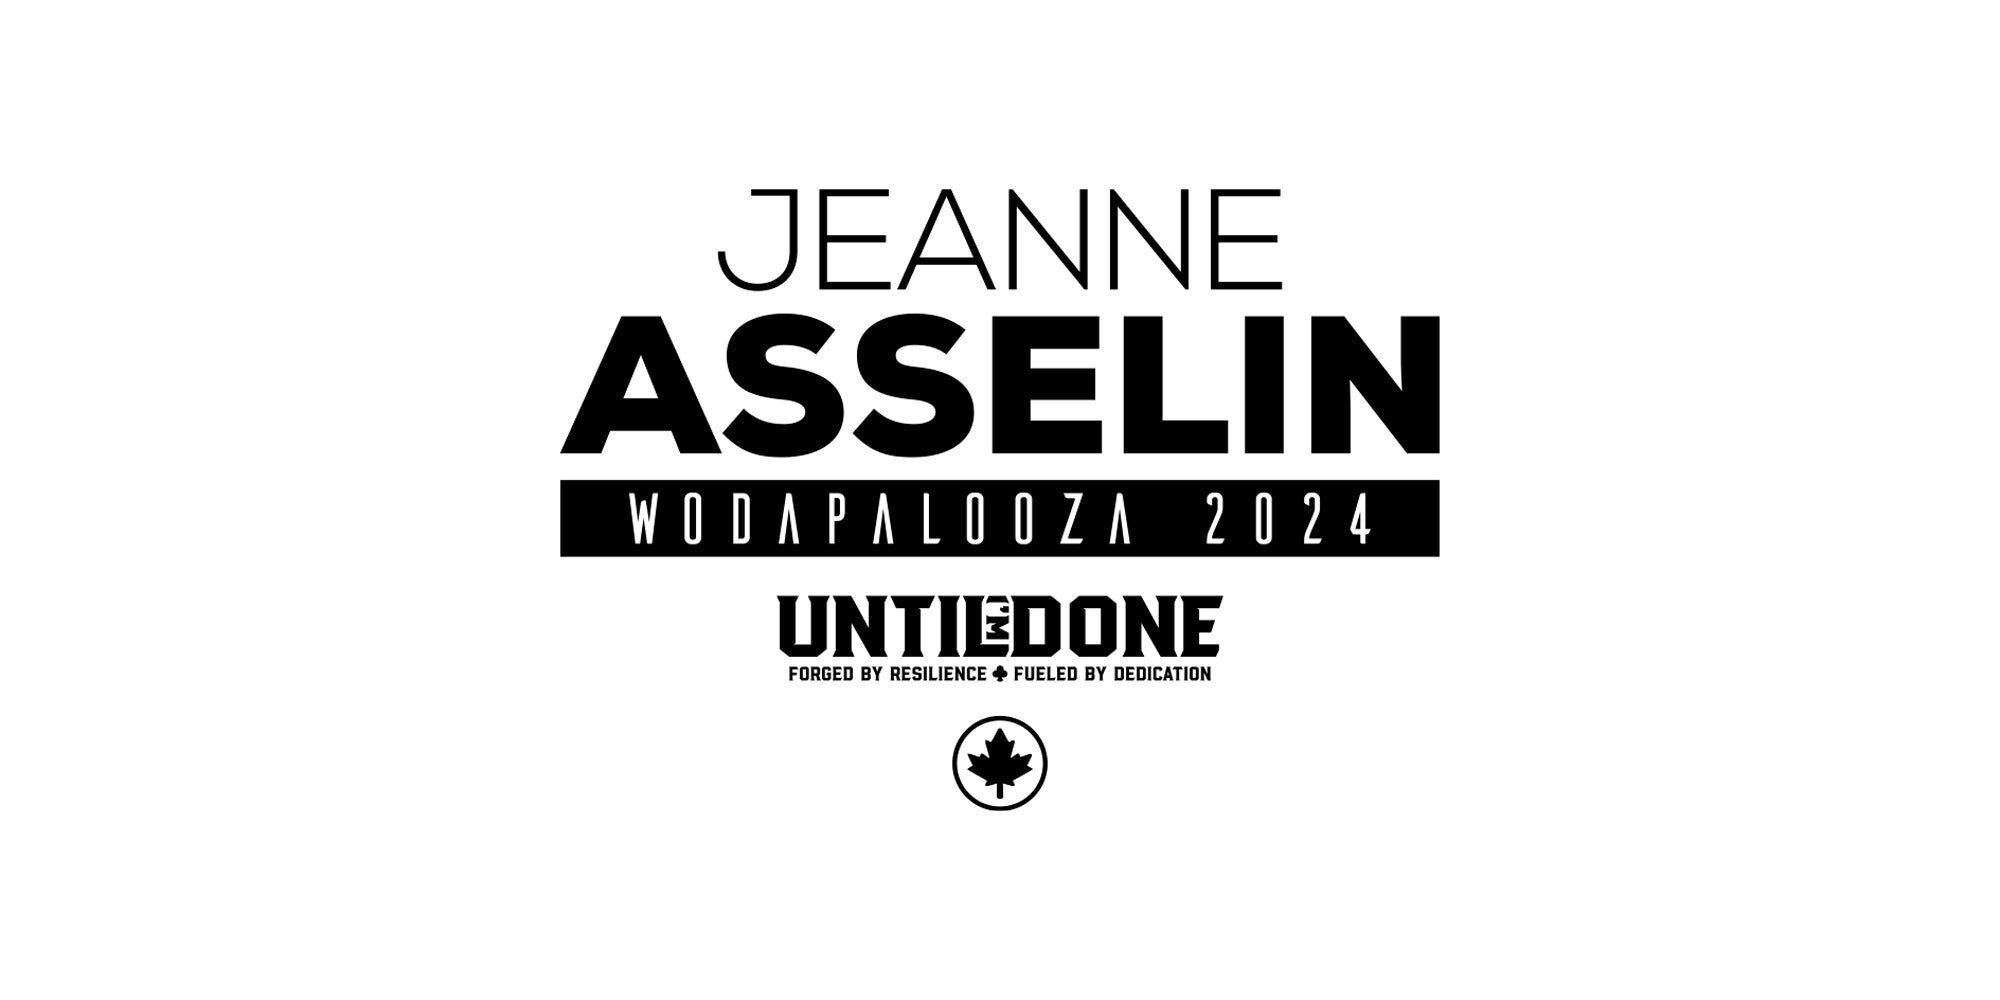 Jeanne Asselin - wodapalooza 2024